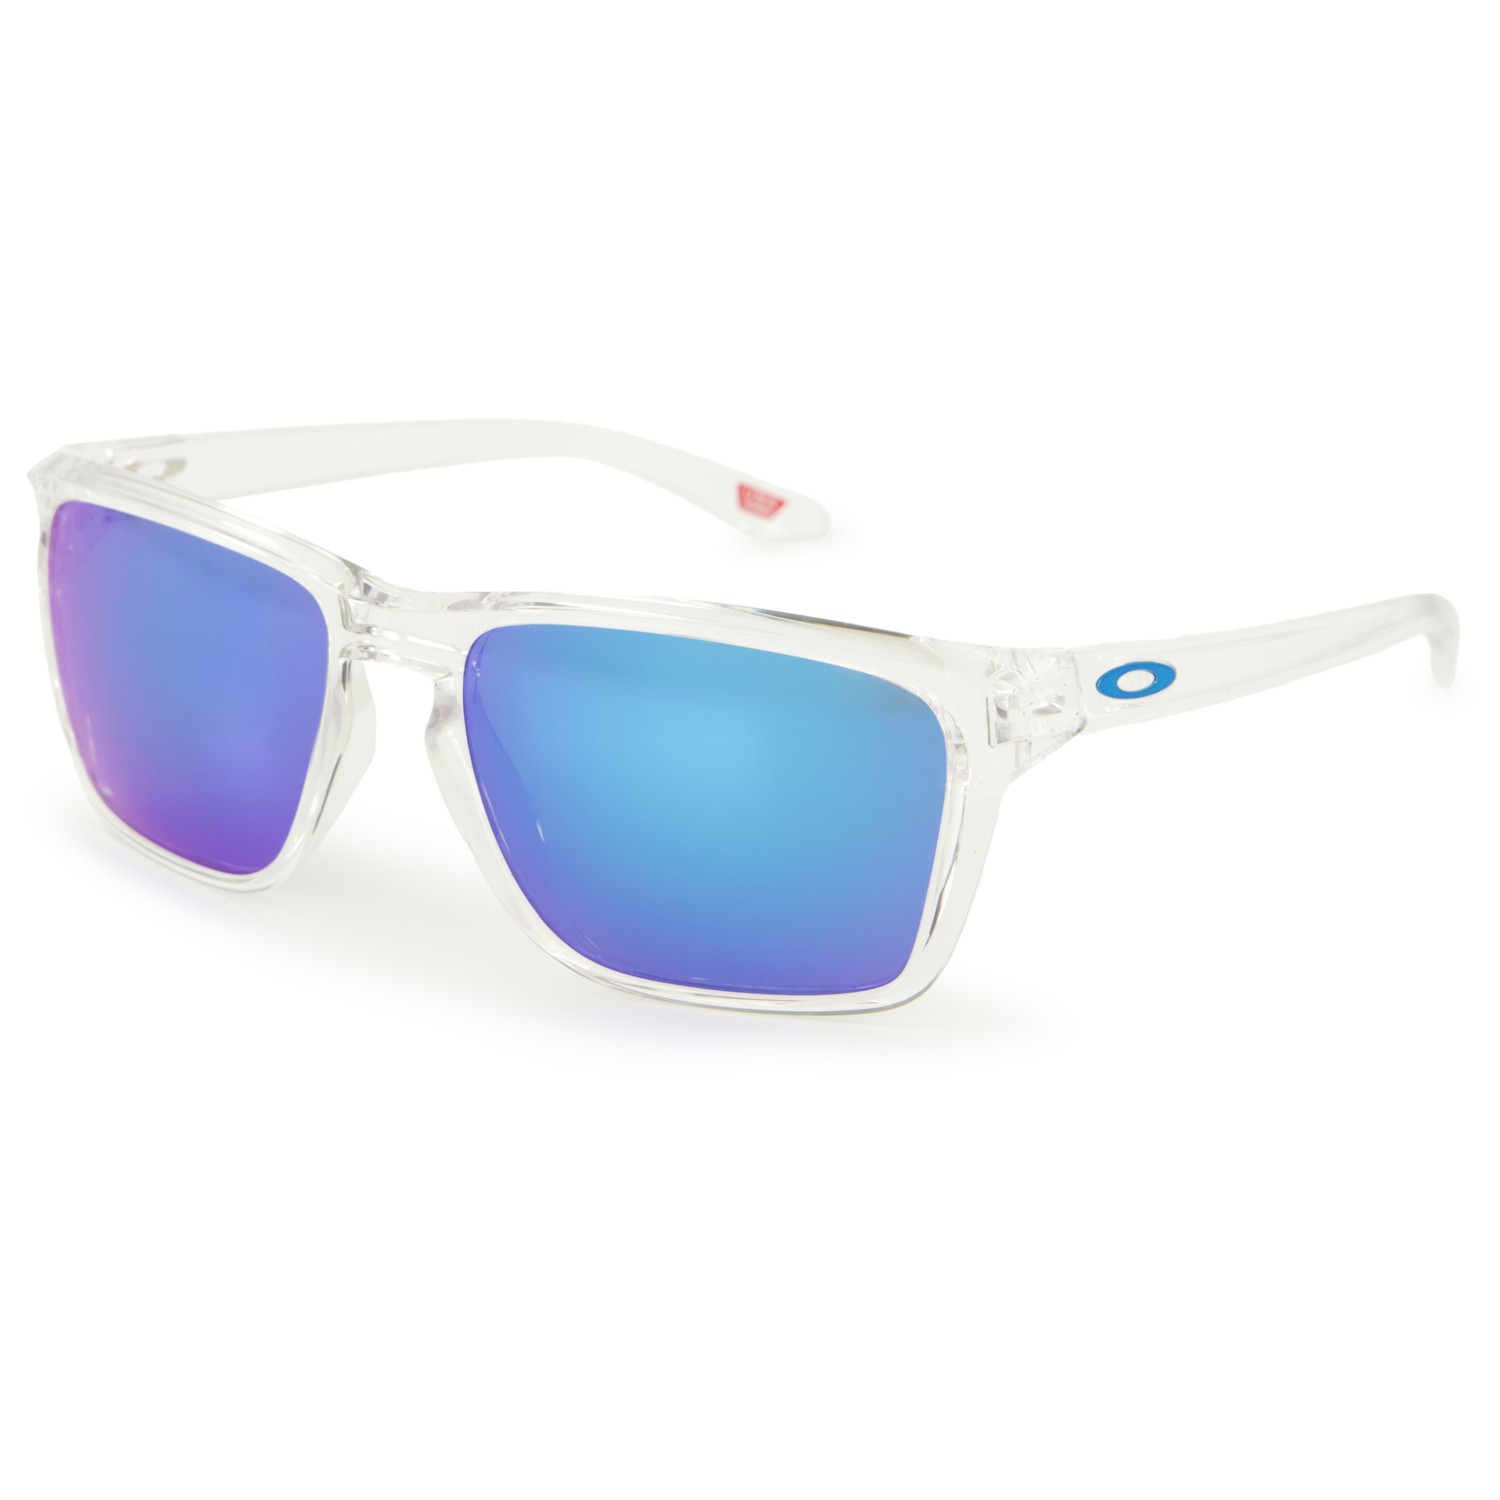 поляризационные солнцезащитные очки oo9448 57 sylas oakley Солнцезащитные очки Oakley Sylas S3 (VLT 13%), цвет Polished Clear